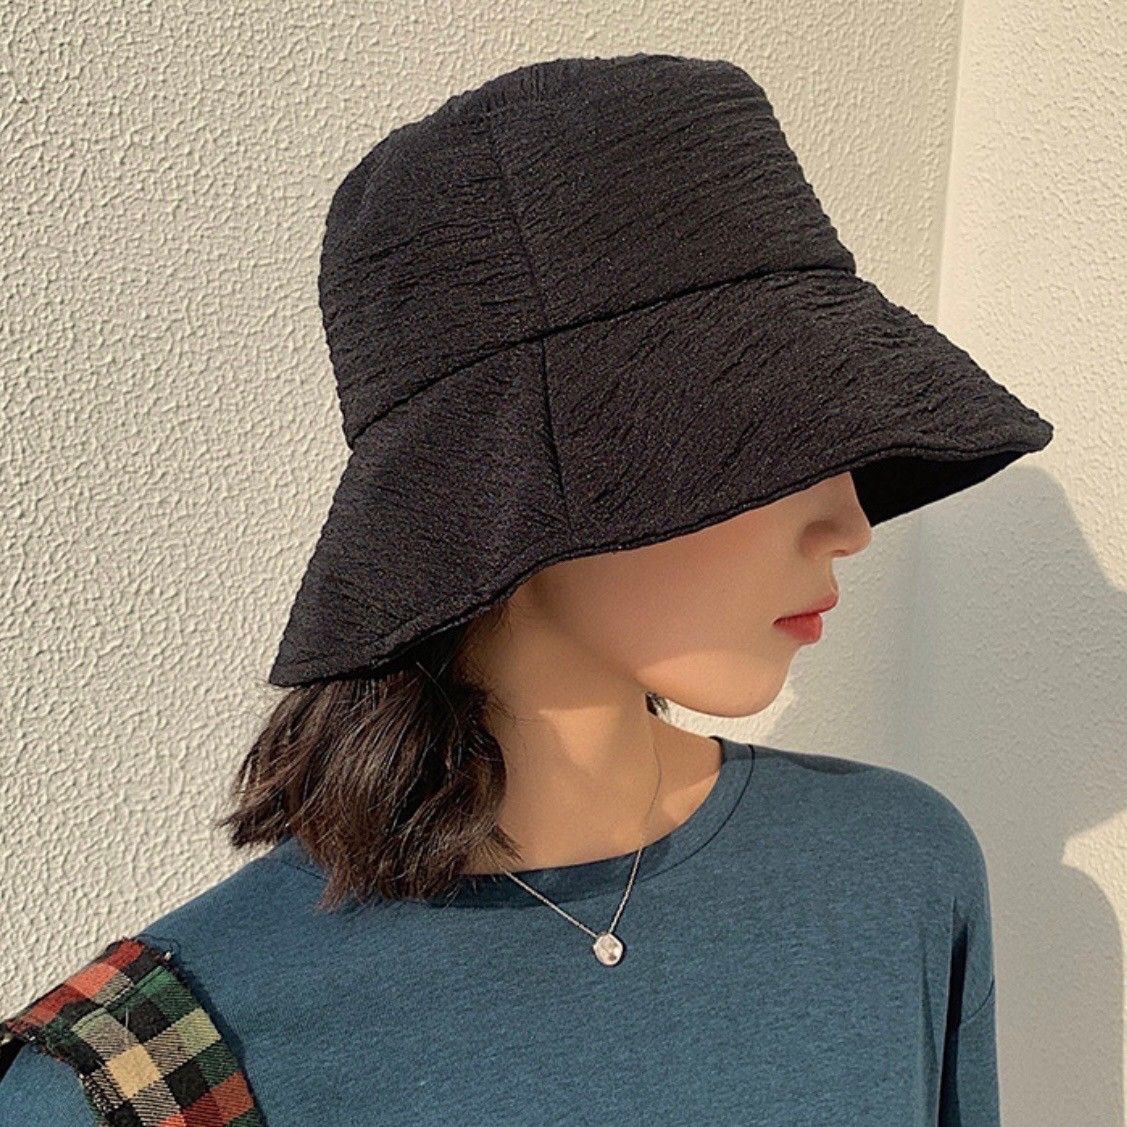 バケットハット サファリハット チューリップハット 紫外線対策 帽子